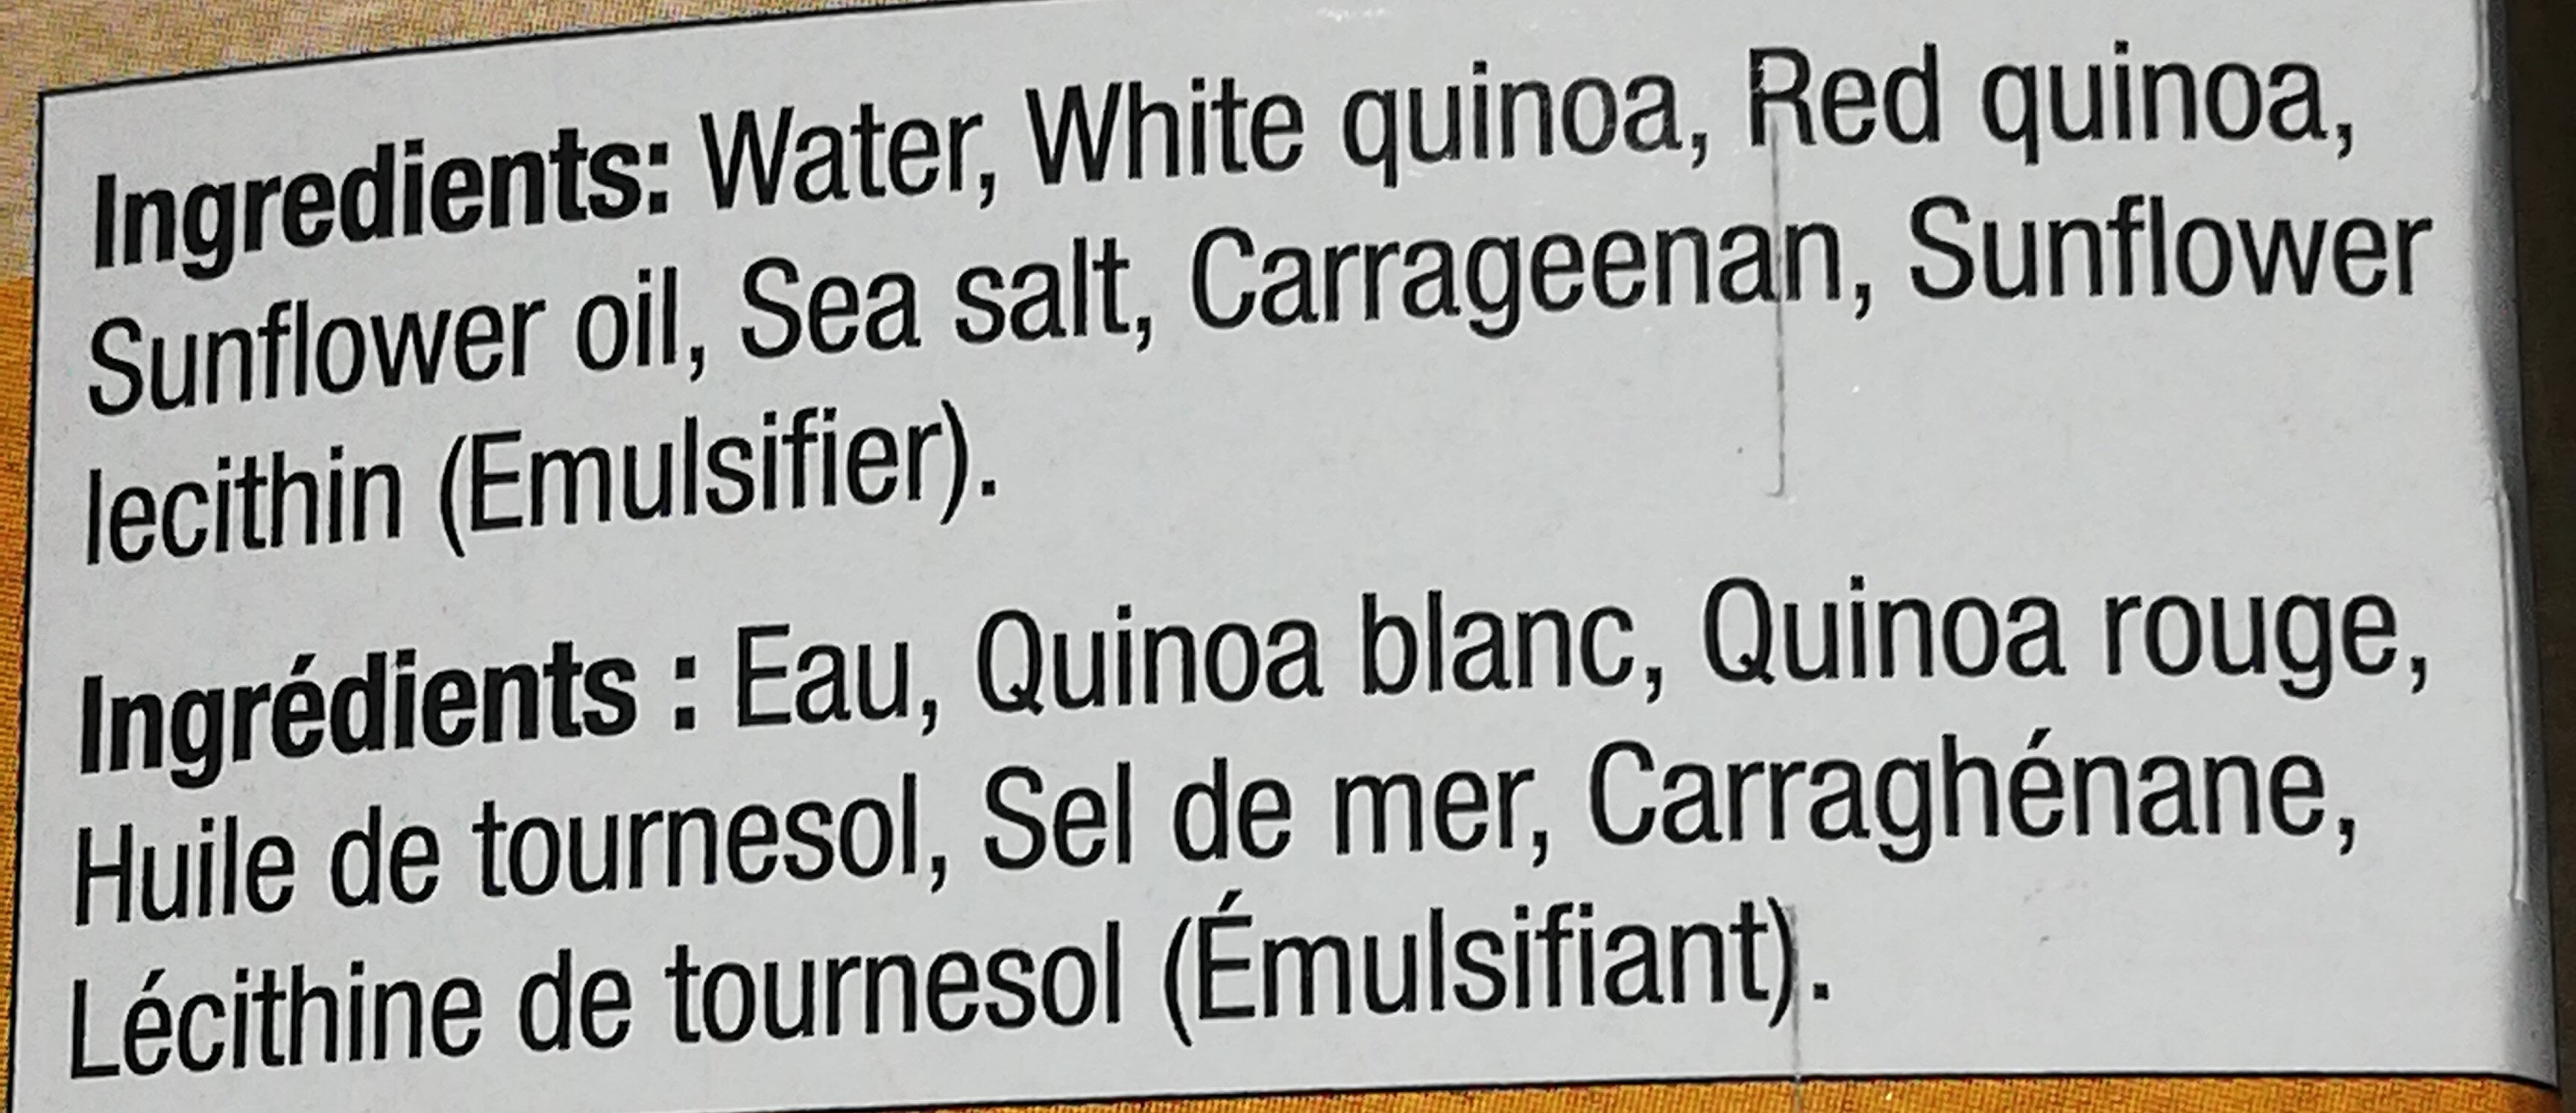 Quinoa blanc et rouge - Ingrédients - en